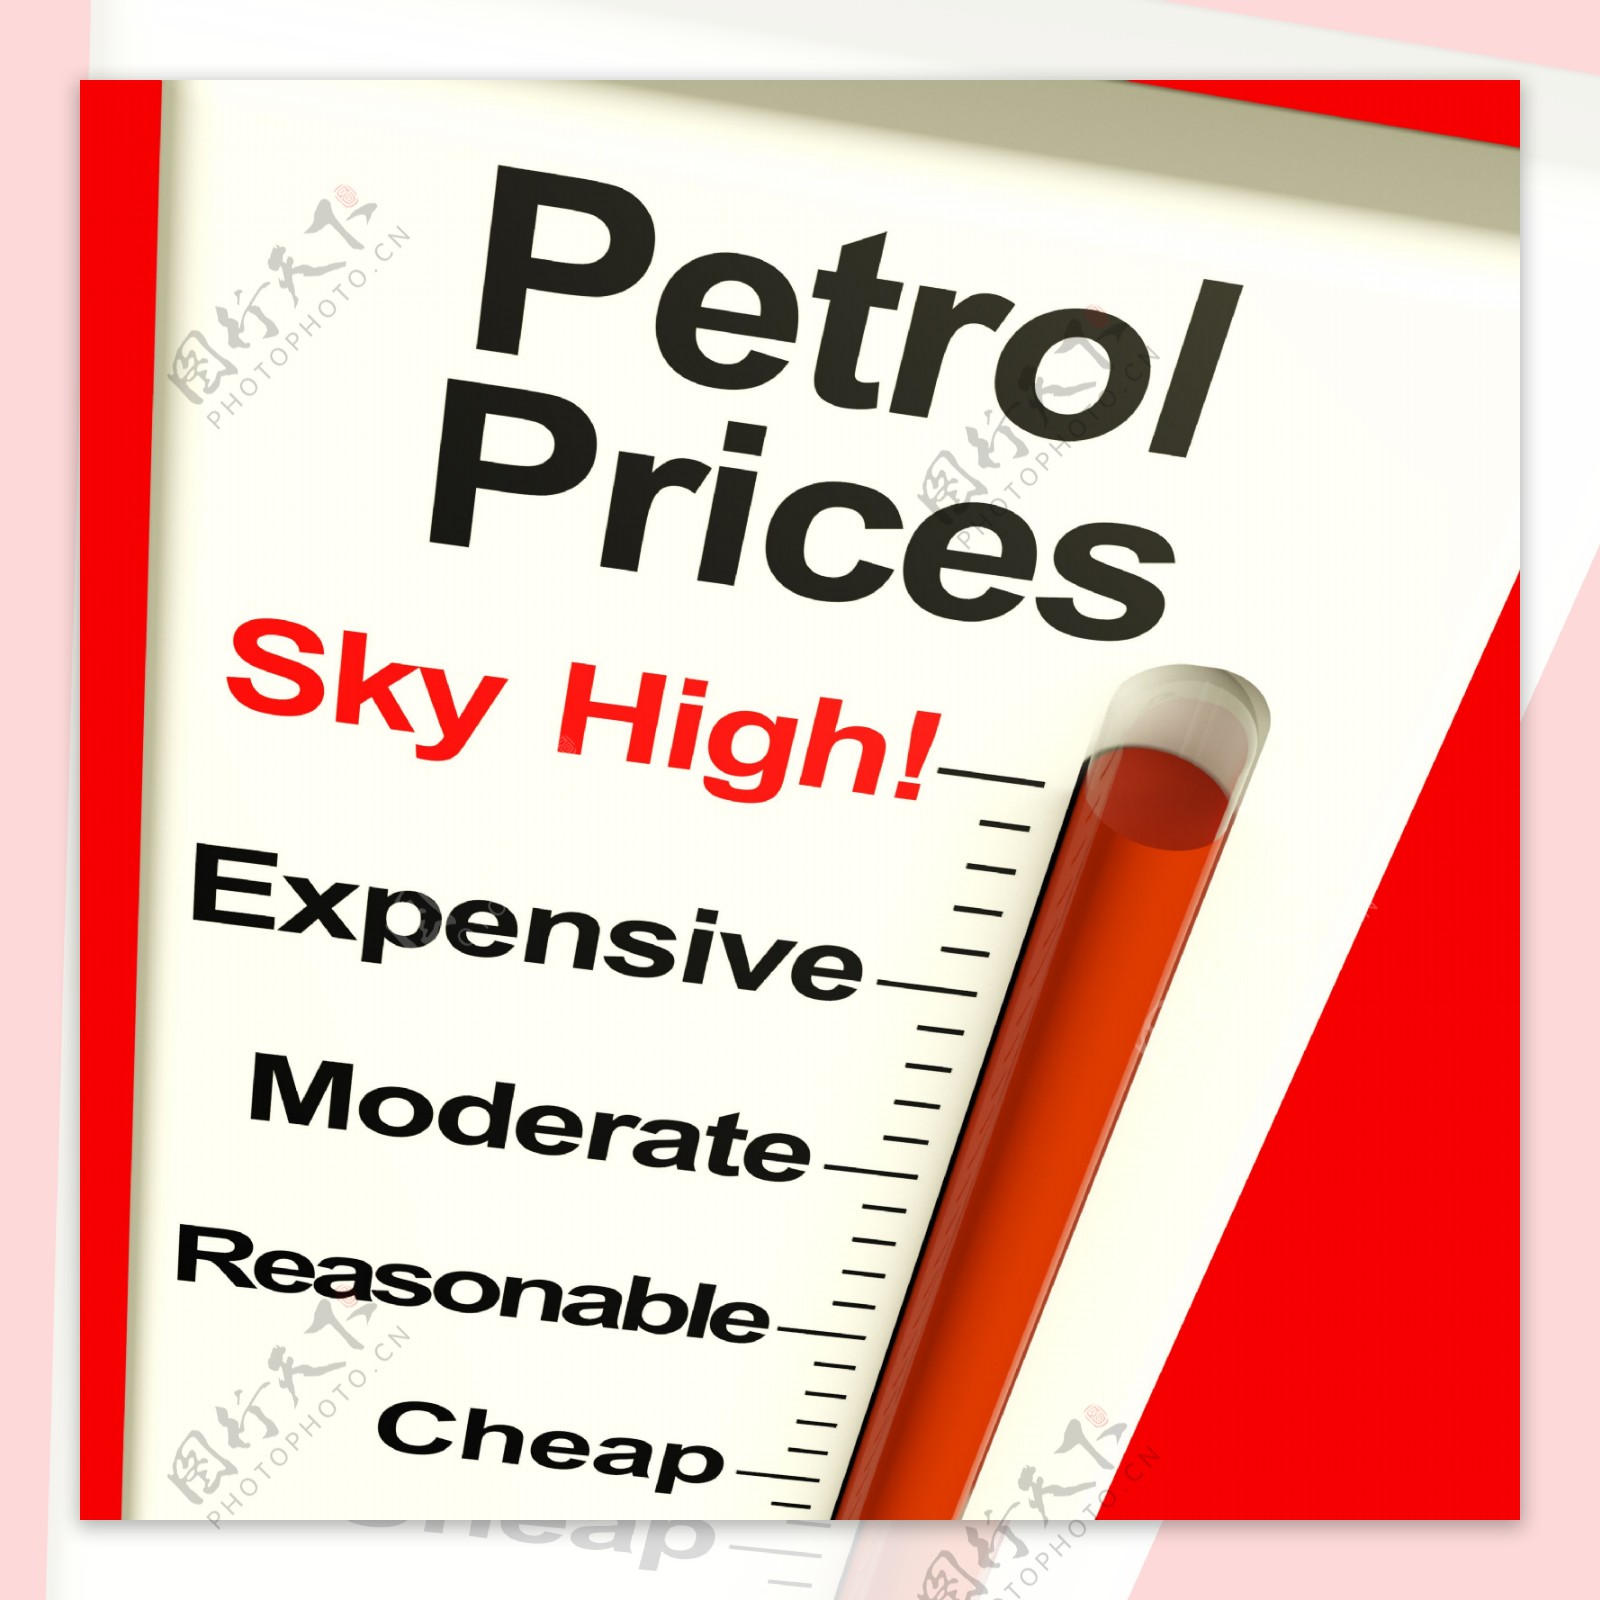 汽油价格飙升的燃料费用高昂的监视器显示